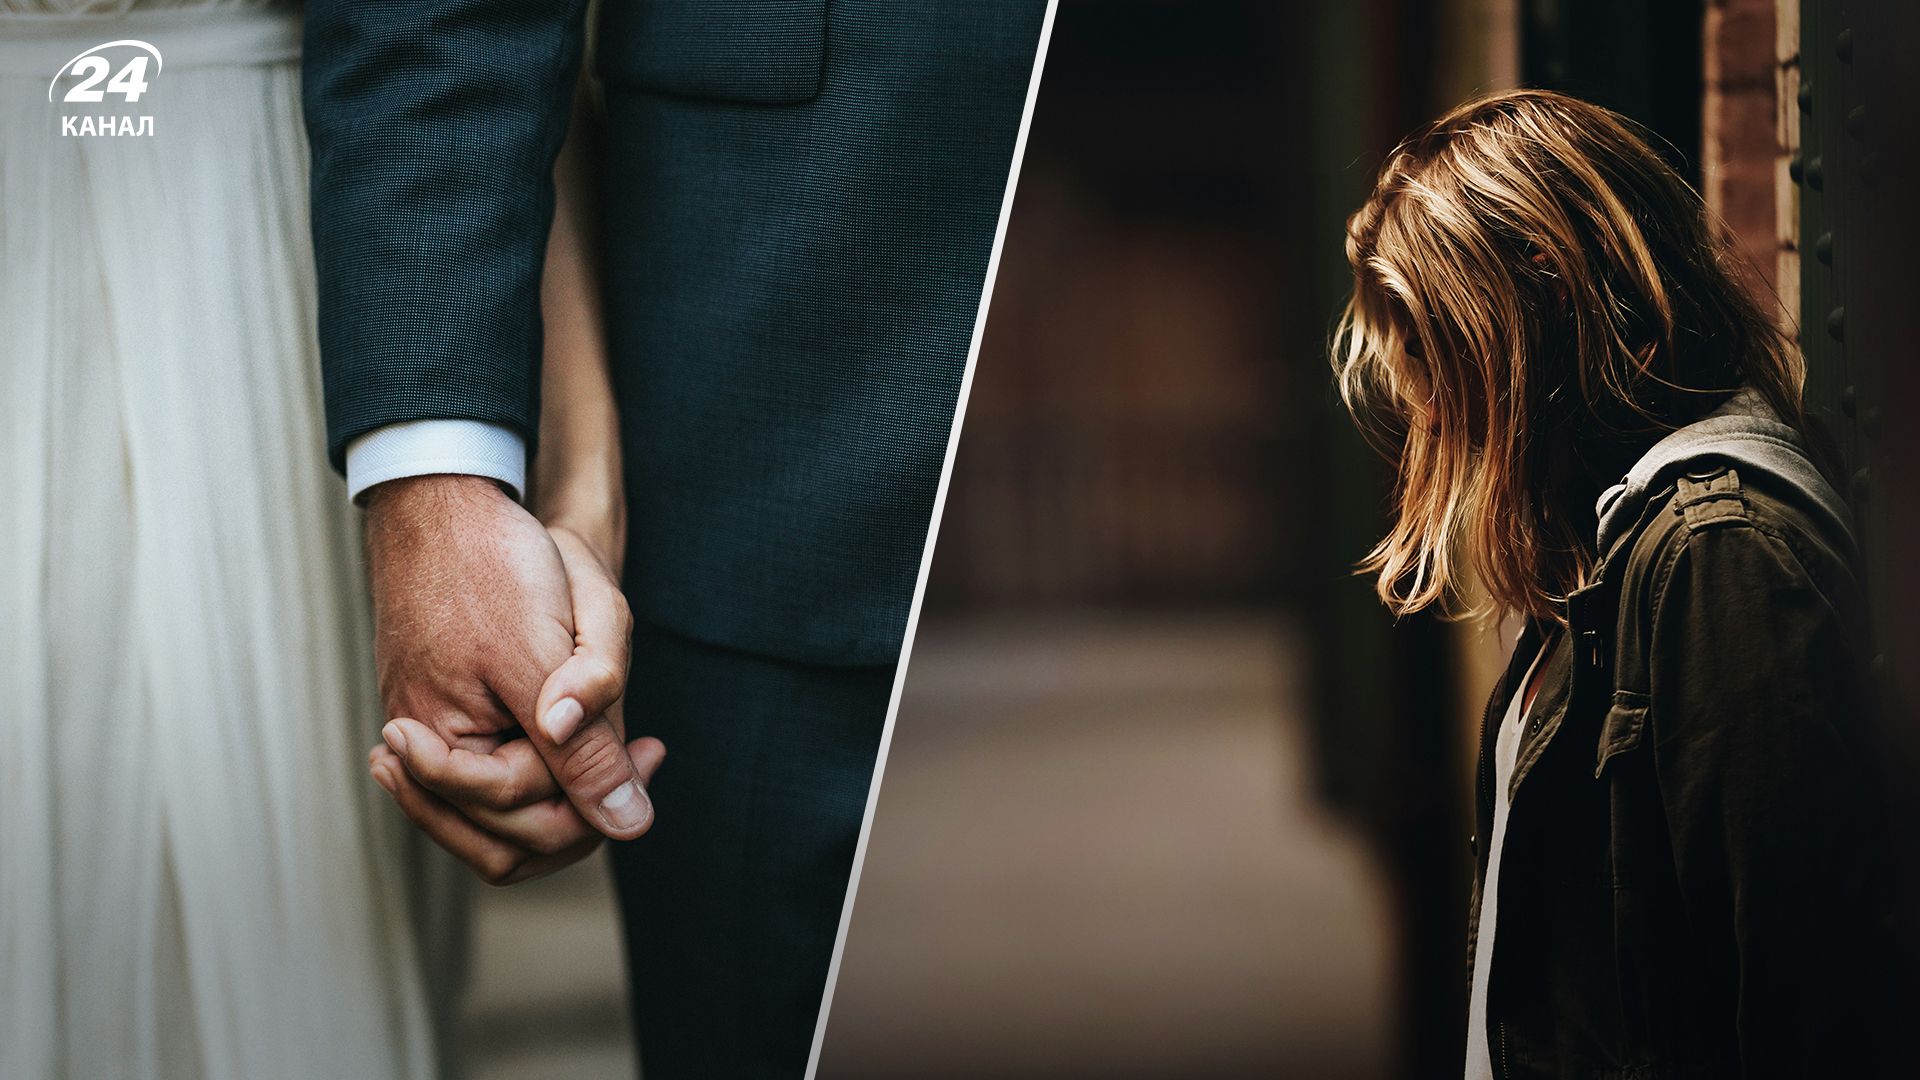 Скандал перед свадьбой - невеста собралась праздновать в годовщину семейной трагедии